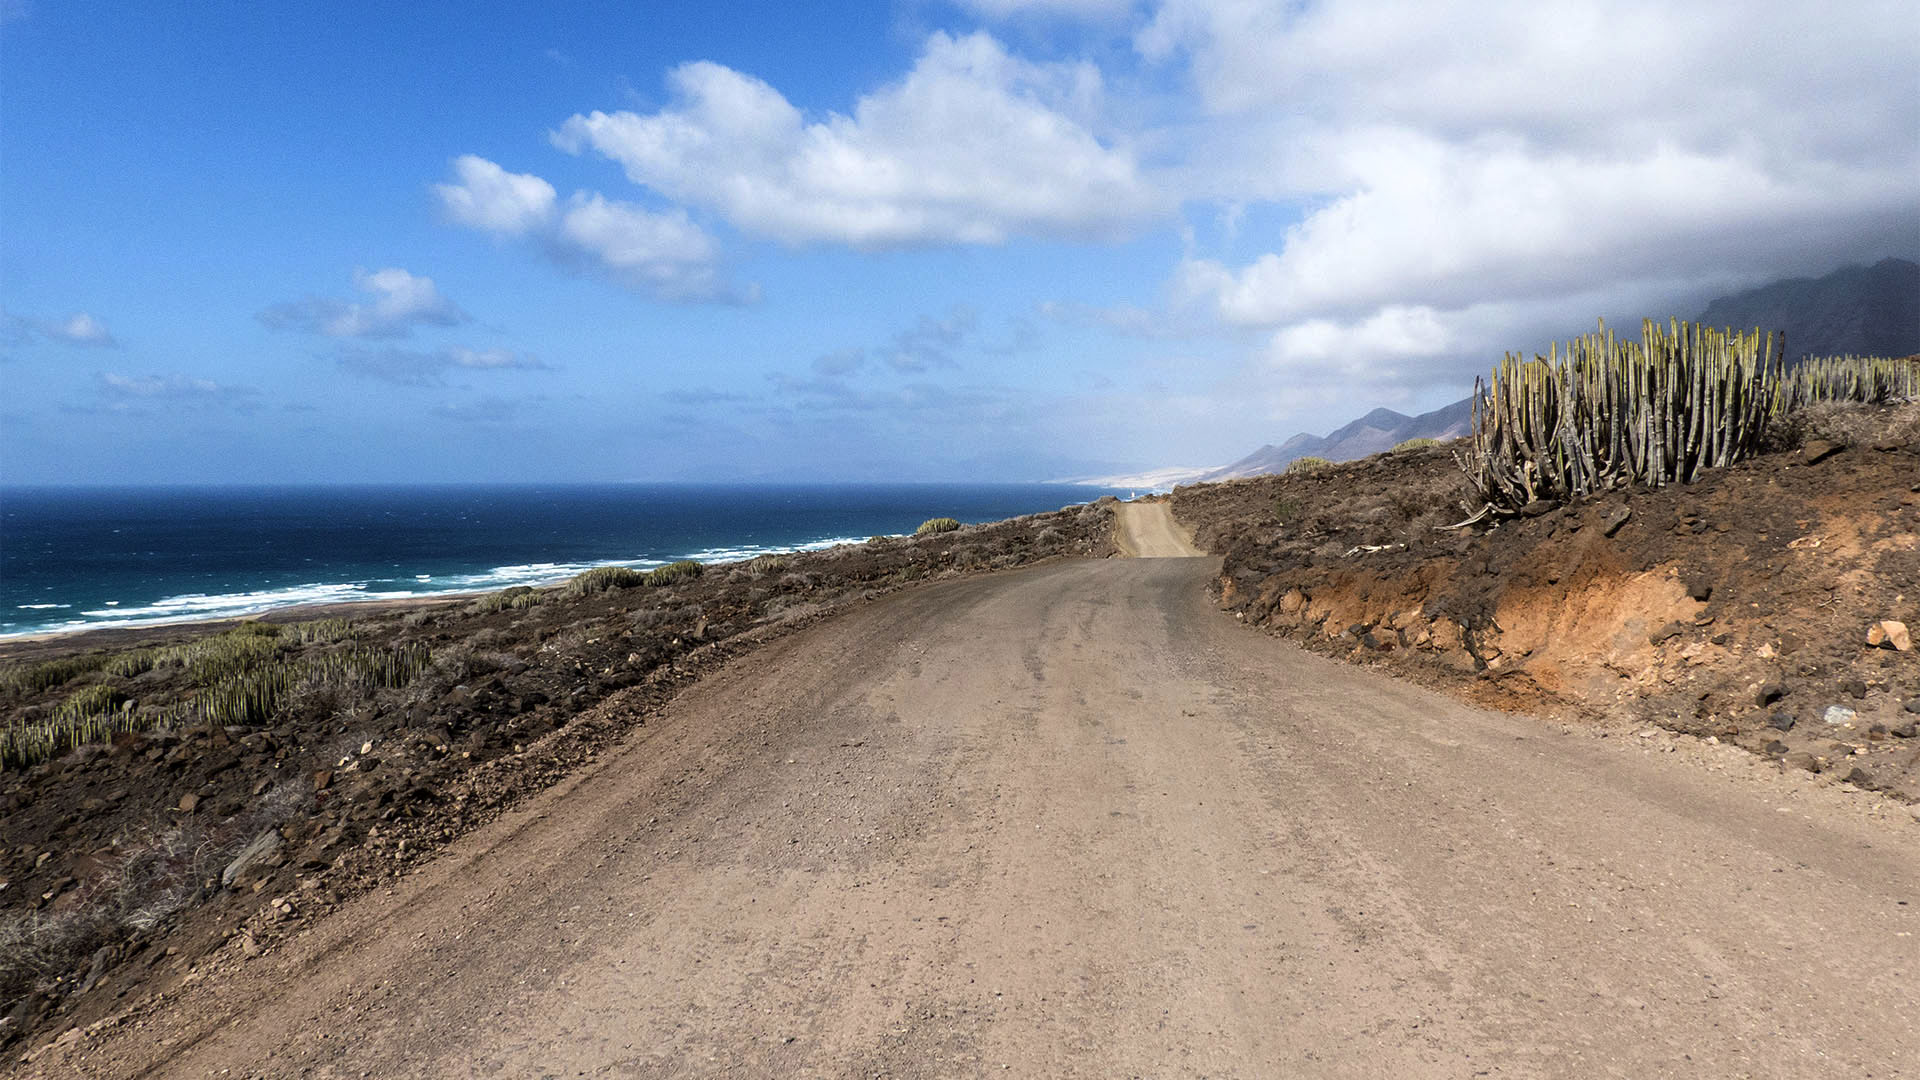 Staubige Pisten füren auf der Halbinsel Jandia auf Fuerteventura zum Punta de Jandia, Punta Pesebre und nach Cofete.